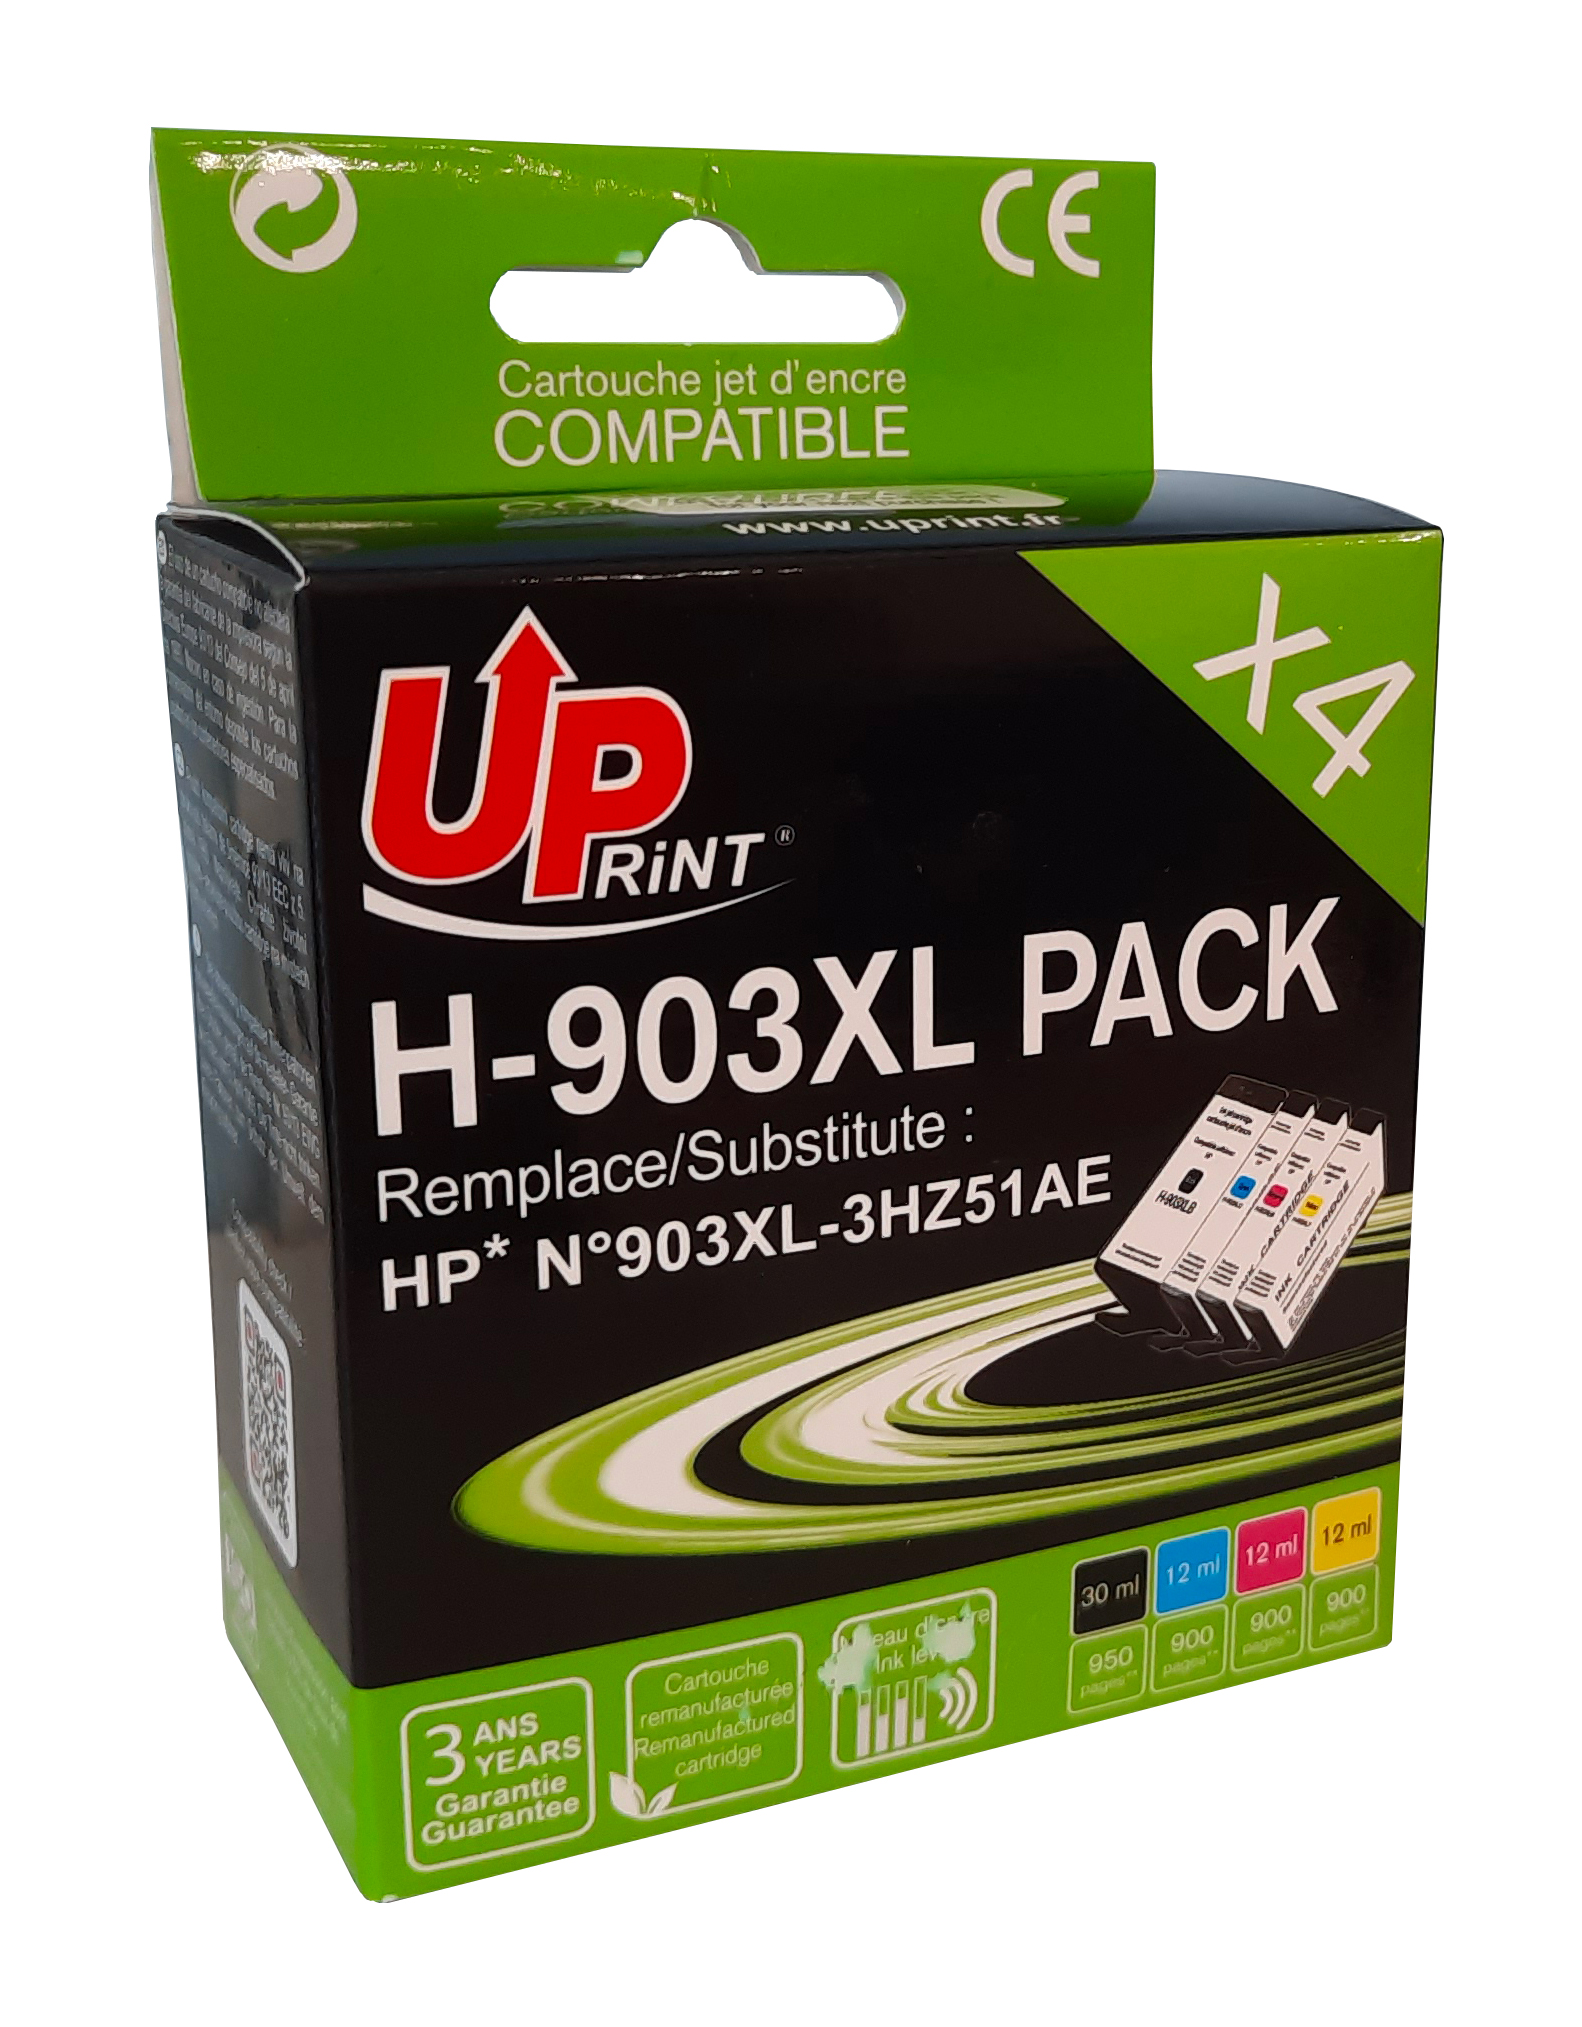 Cartouches d'encre compatibles HP 953 XL - Lot de 4 pas cher